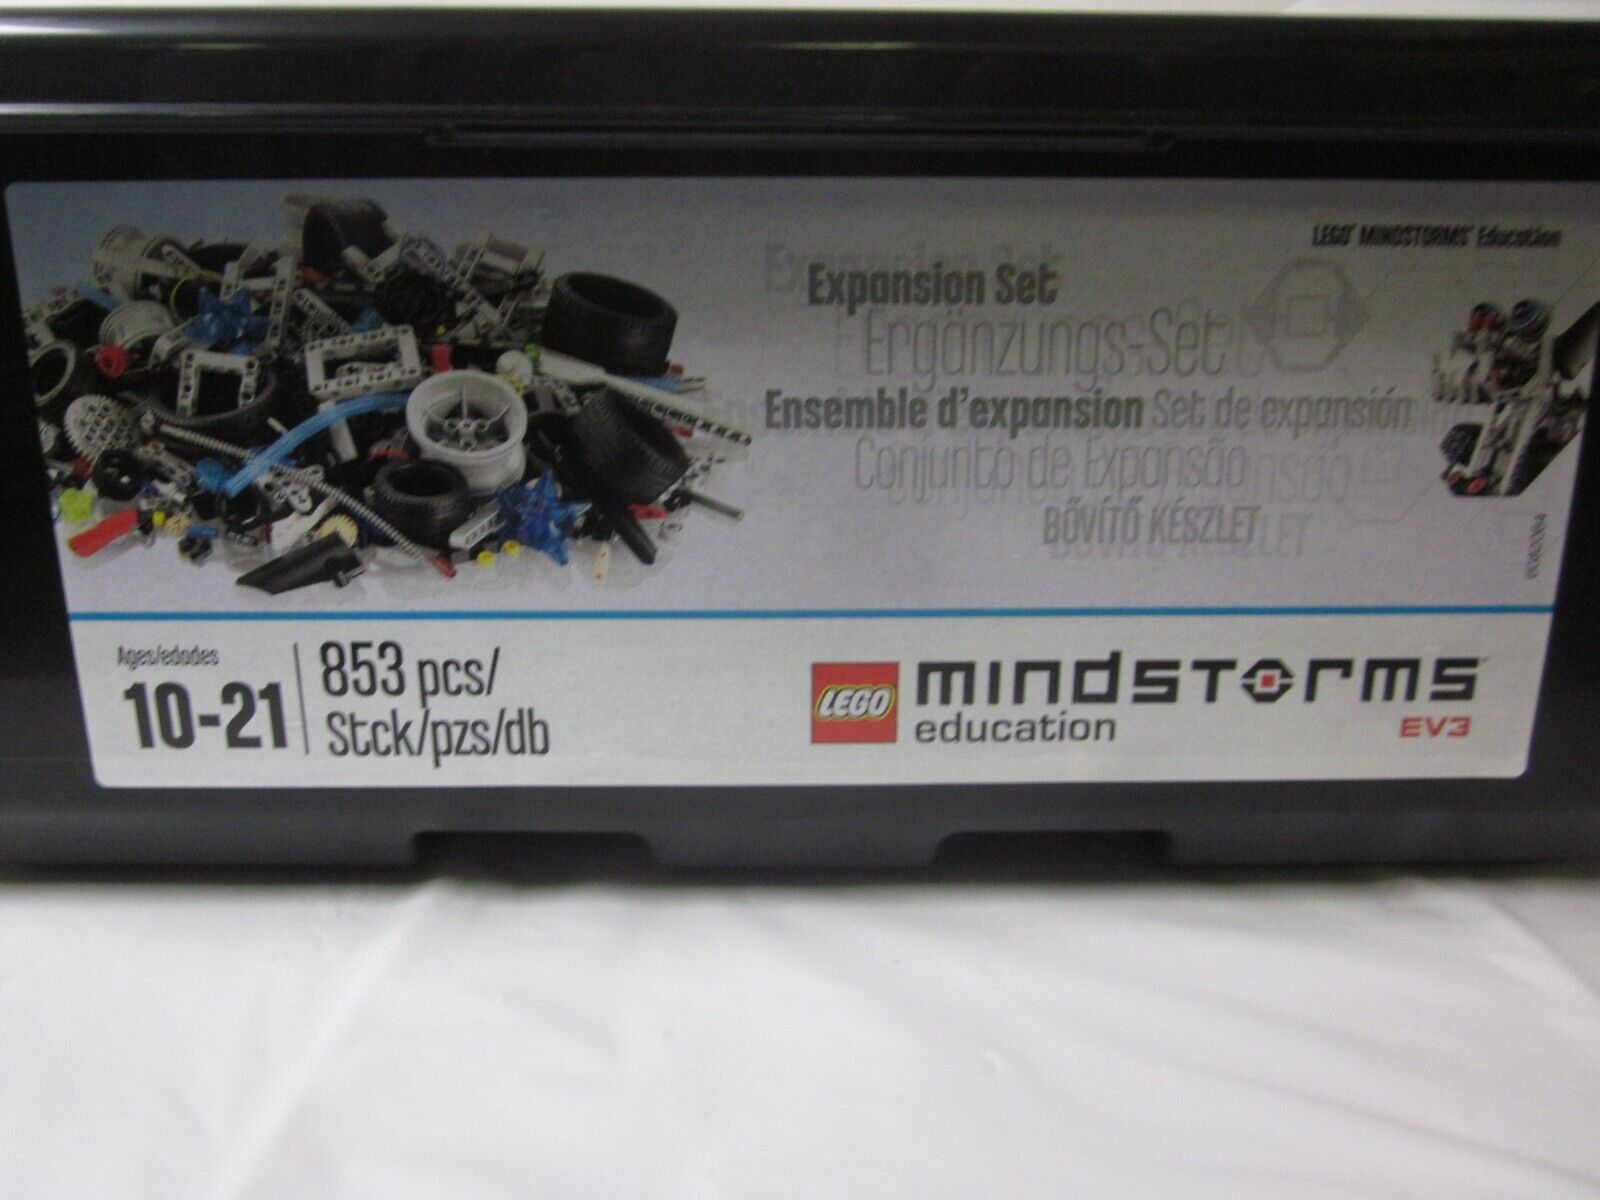 NEW LEGO Mindstorm EV3 Education Expansion set 45560